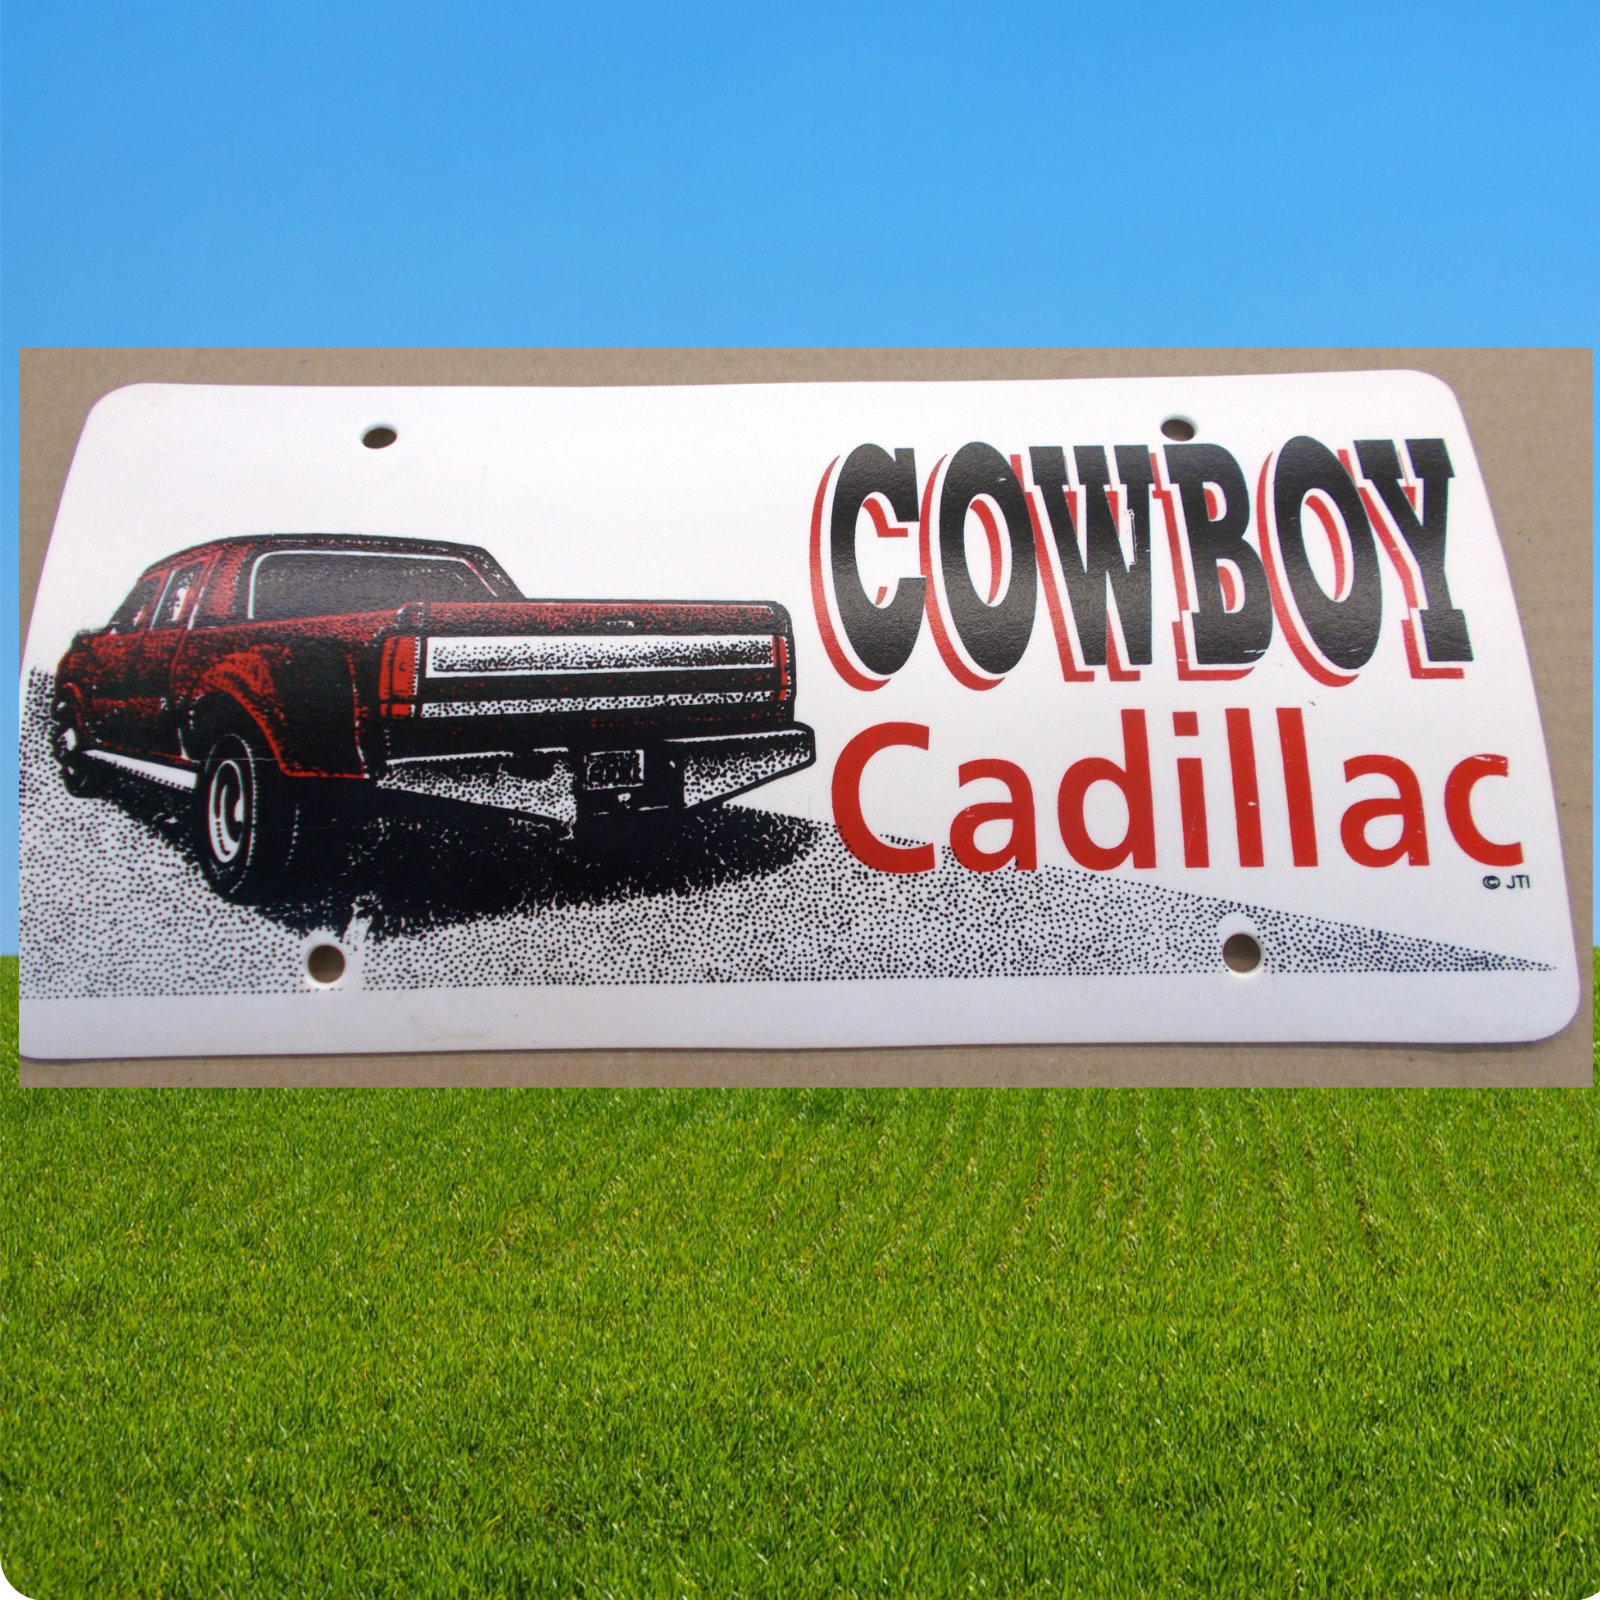 Schild \"Cowboy Cadillac\", Plastikschild, Western Schild, 30 x 15